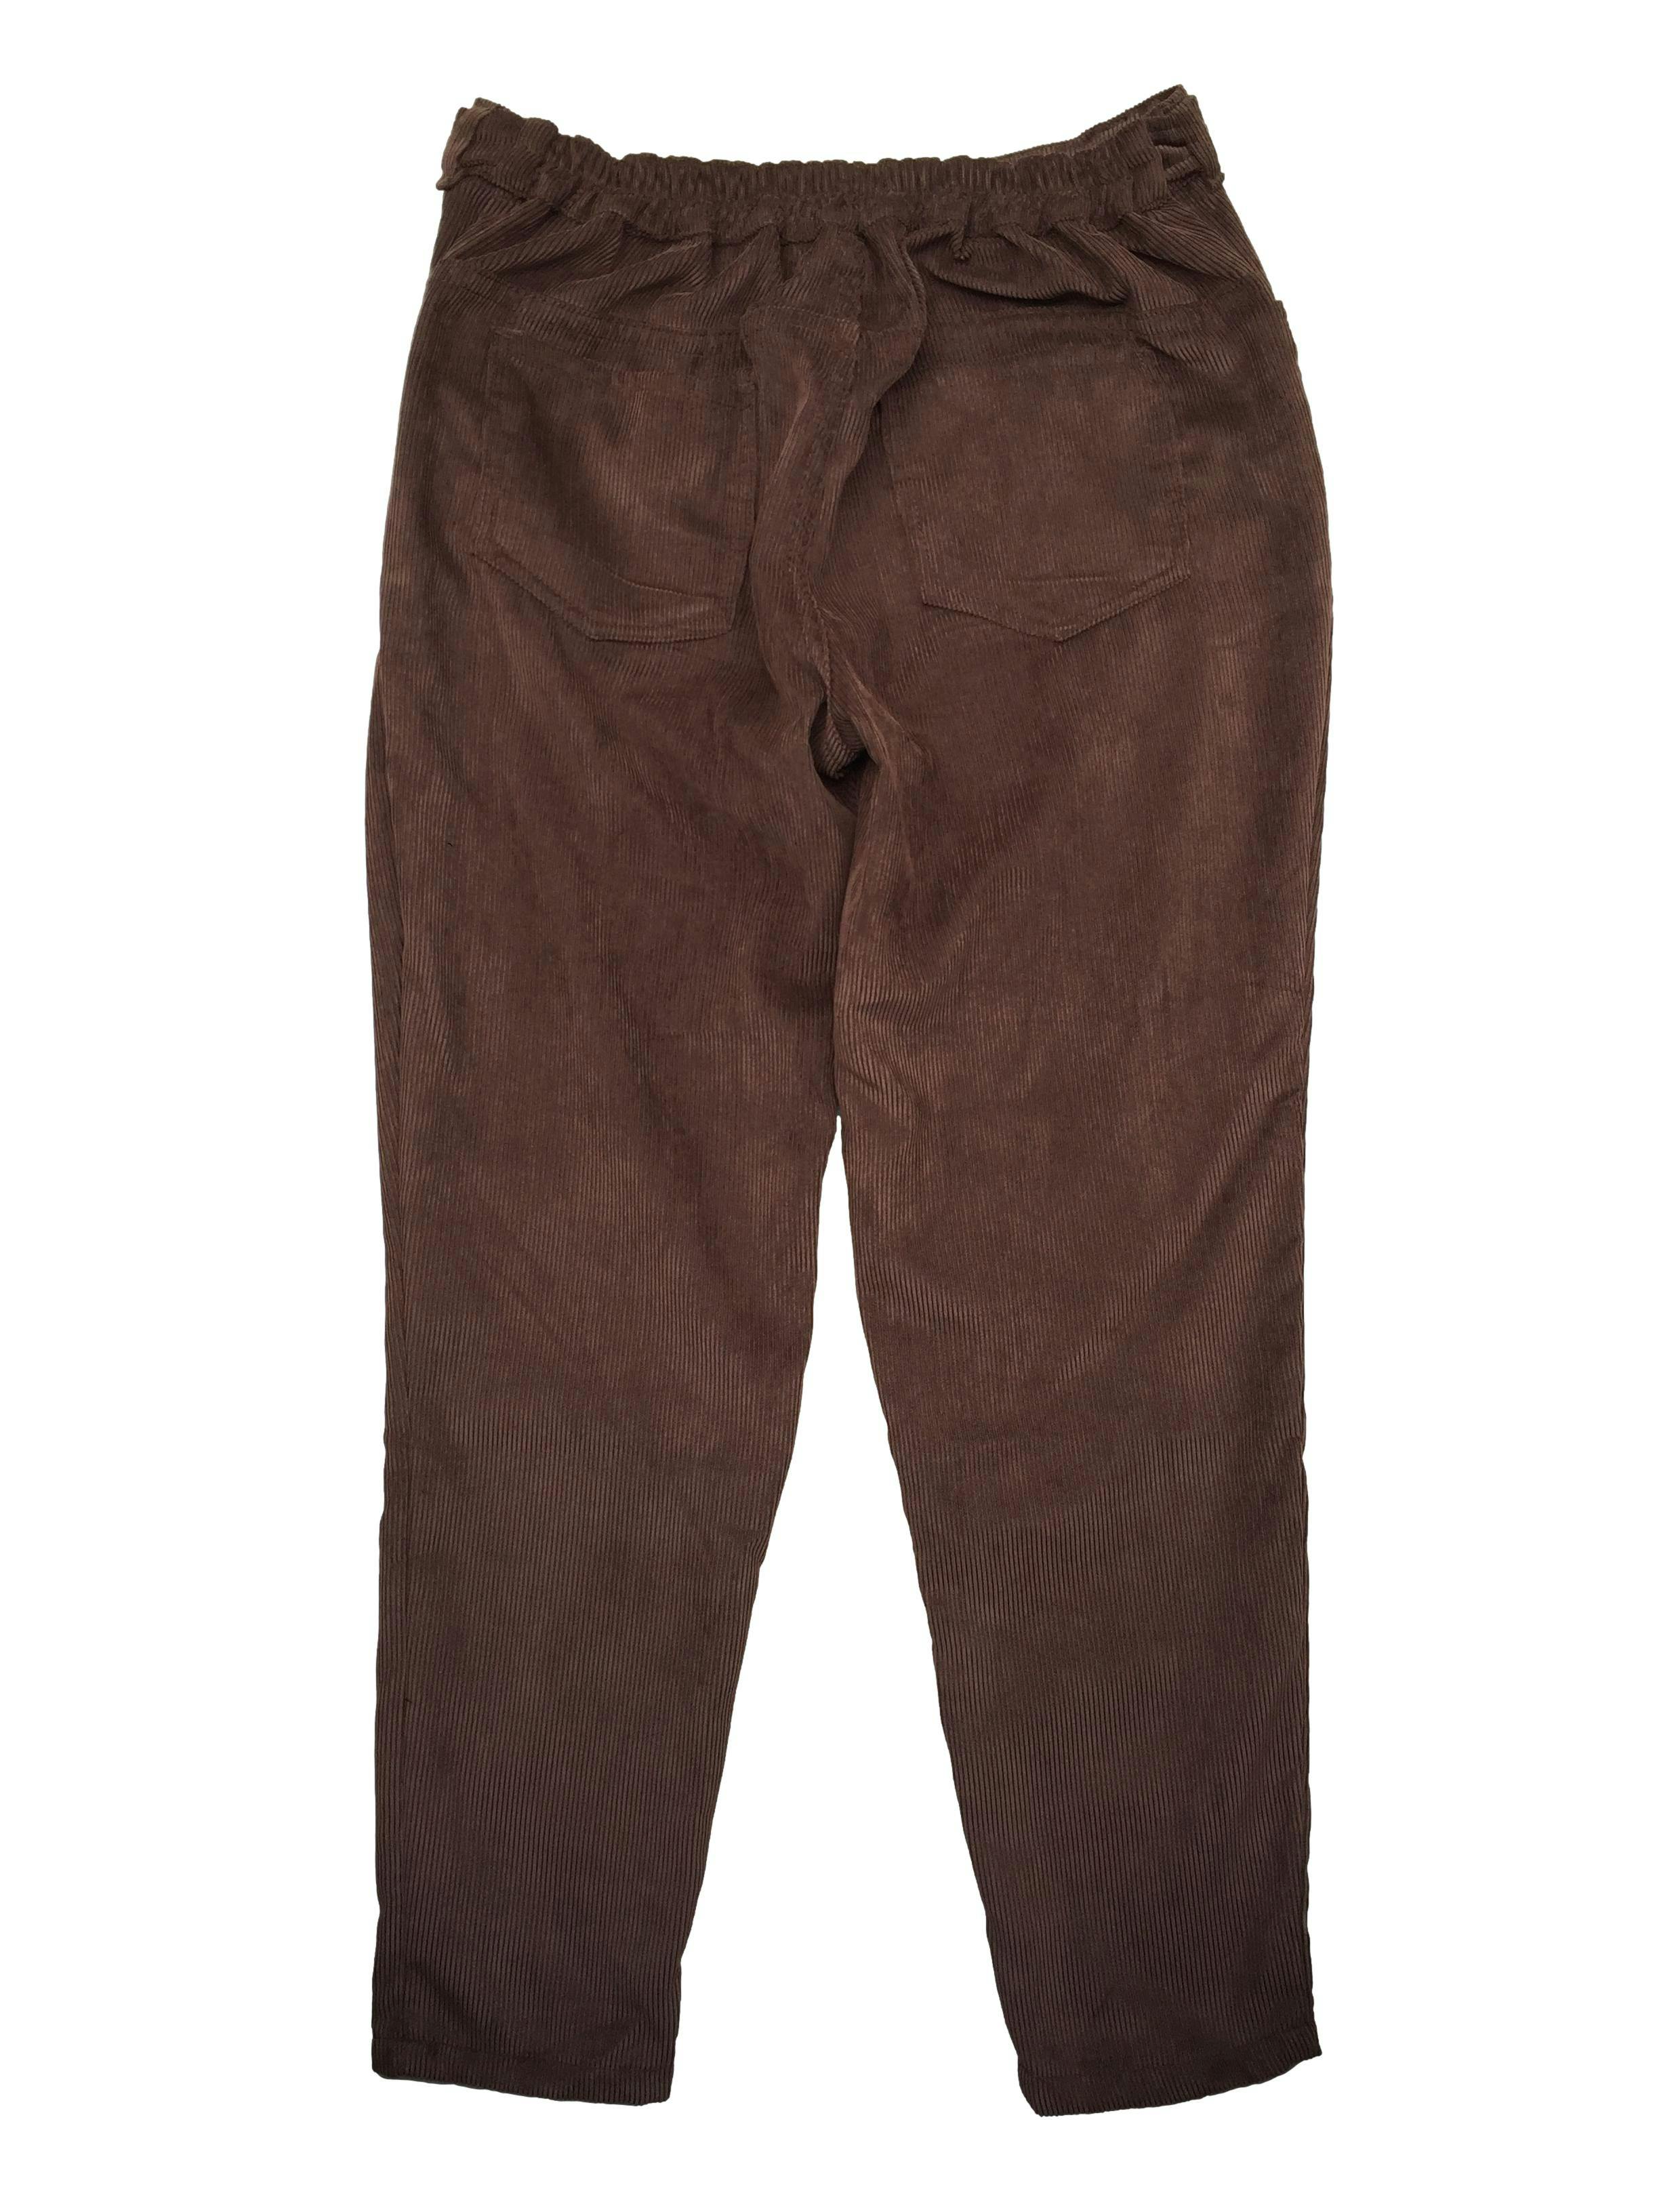 Pantalón de corduroy marrón, cote recto con 4 bolsillos y pretina posterior elástica regulable con botones. Cintura 78cm sin estirar, Largo 94cm.